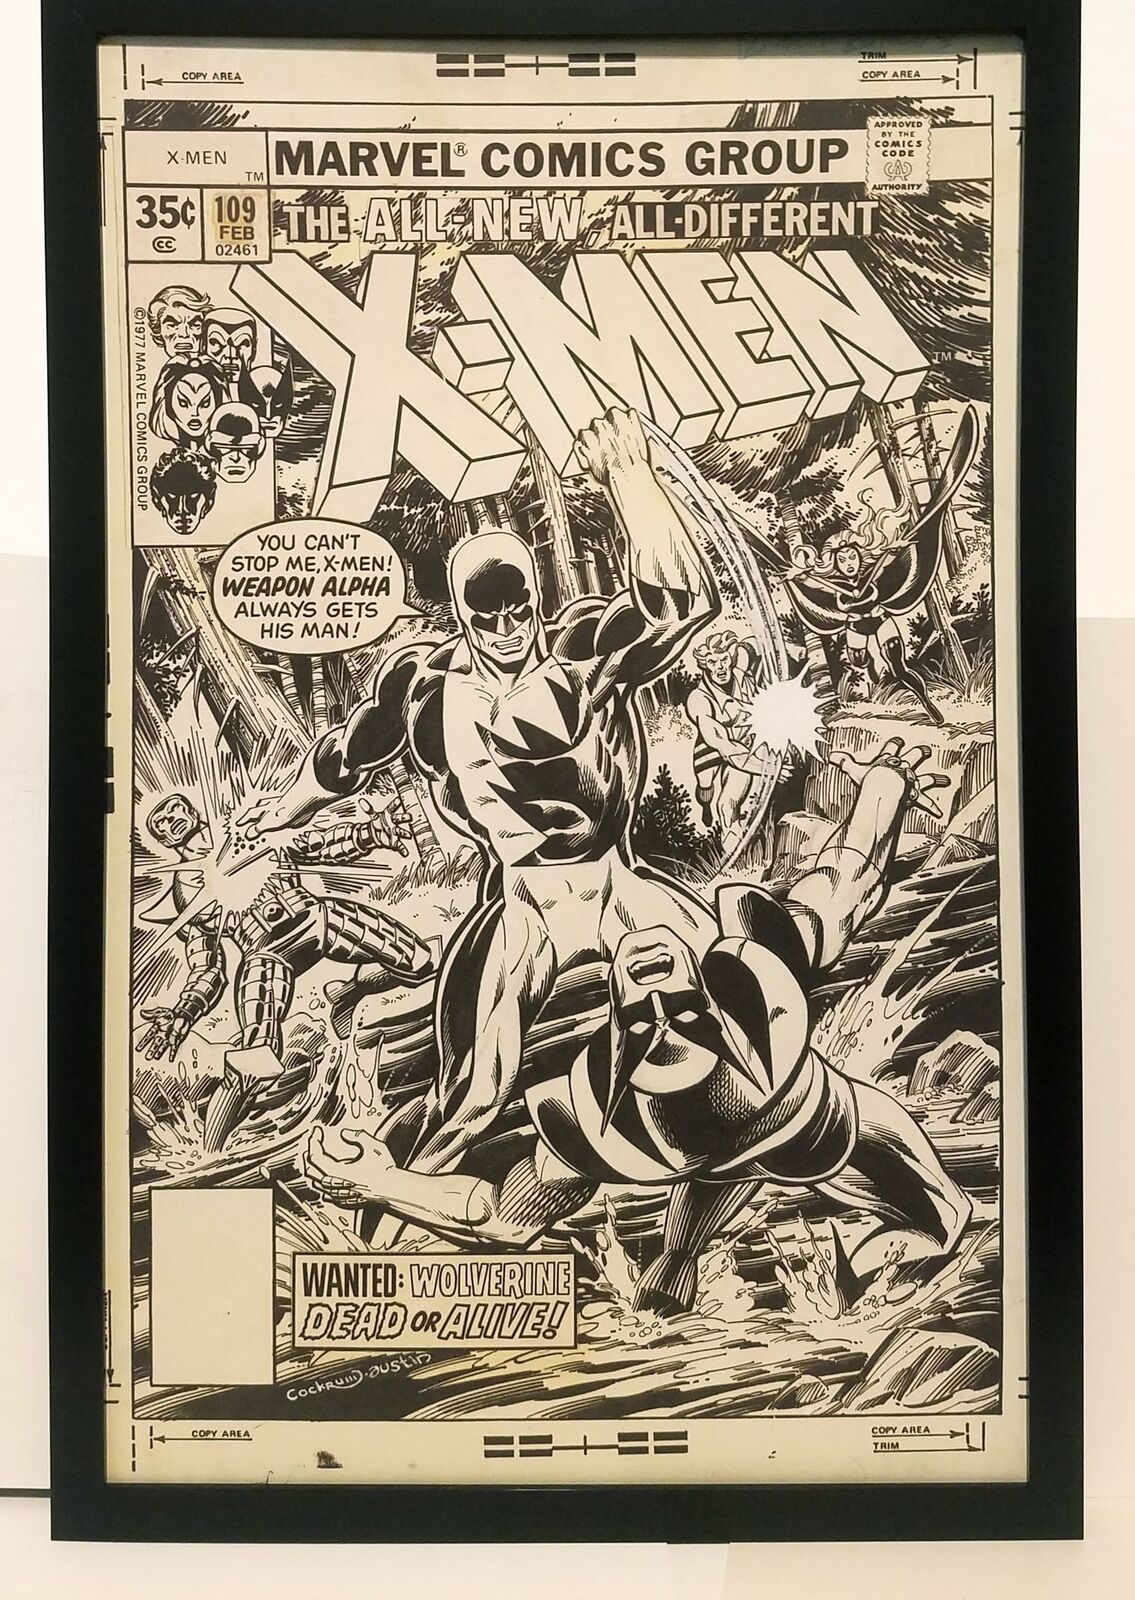 Uncanny X-Men #109 by Dave Cockrum 11x17 FRAMED Original Art Poster Marvel Comic